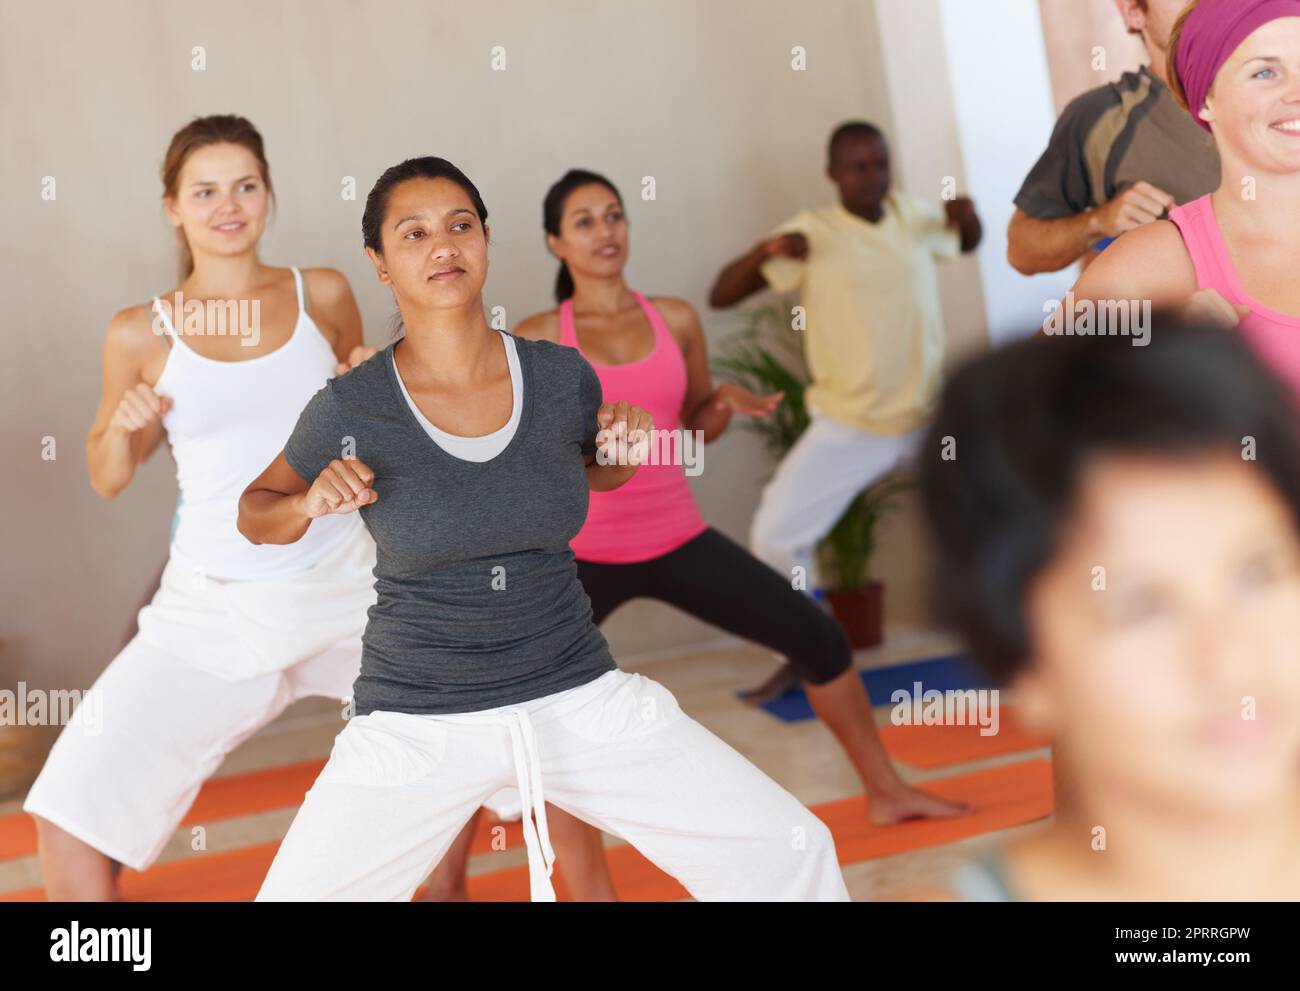 L'accent est essentiel dans le yoga. Un groupe d'élèves du yoga se concentrant sur leur forme pendant la classe. Banque D'Images